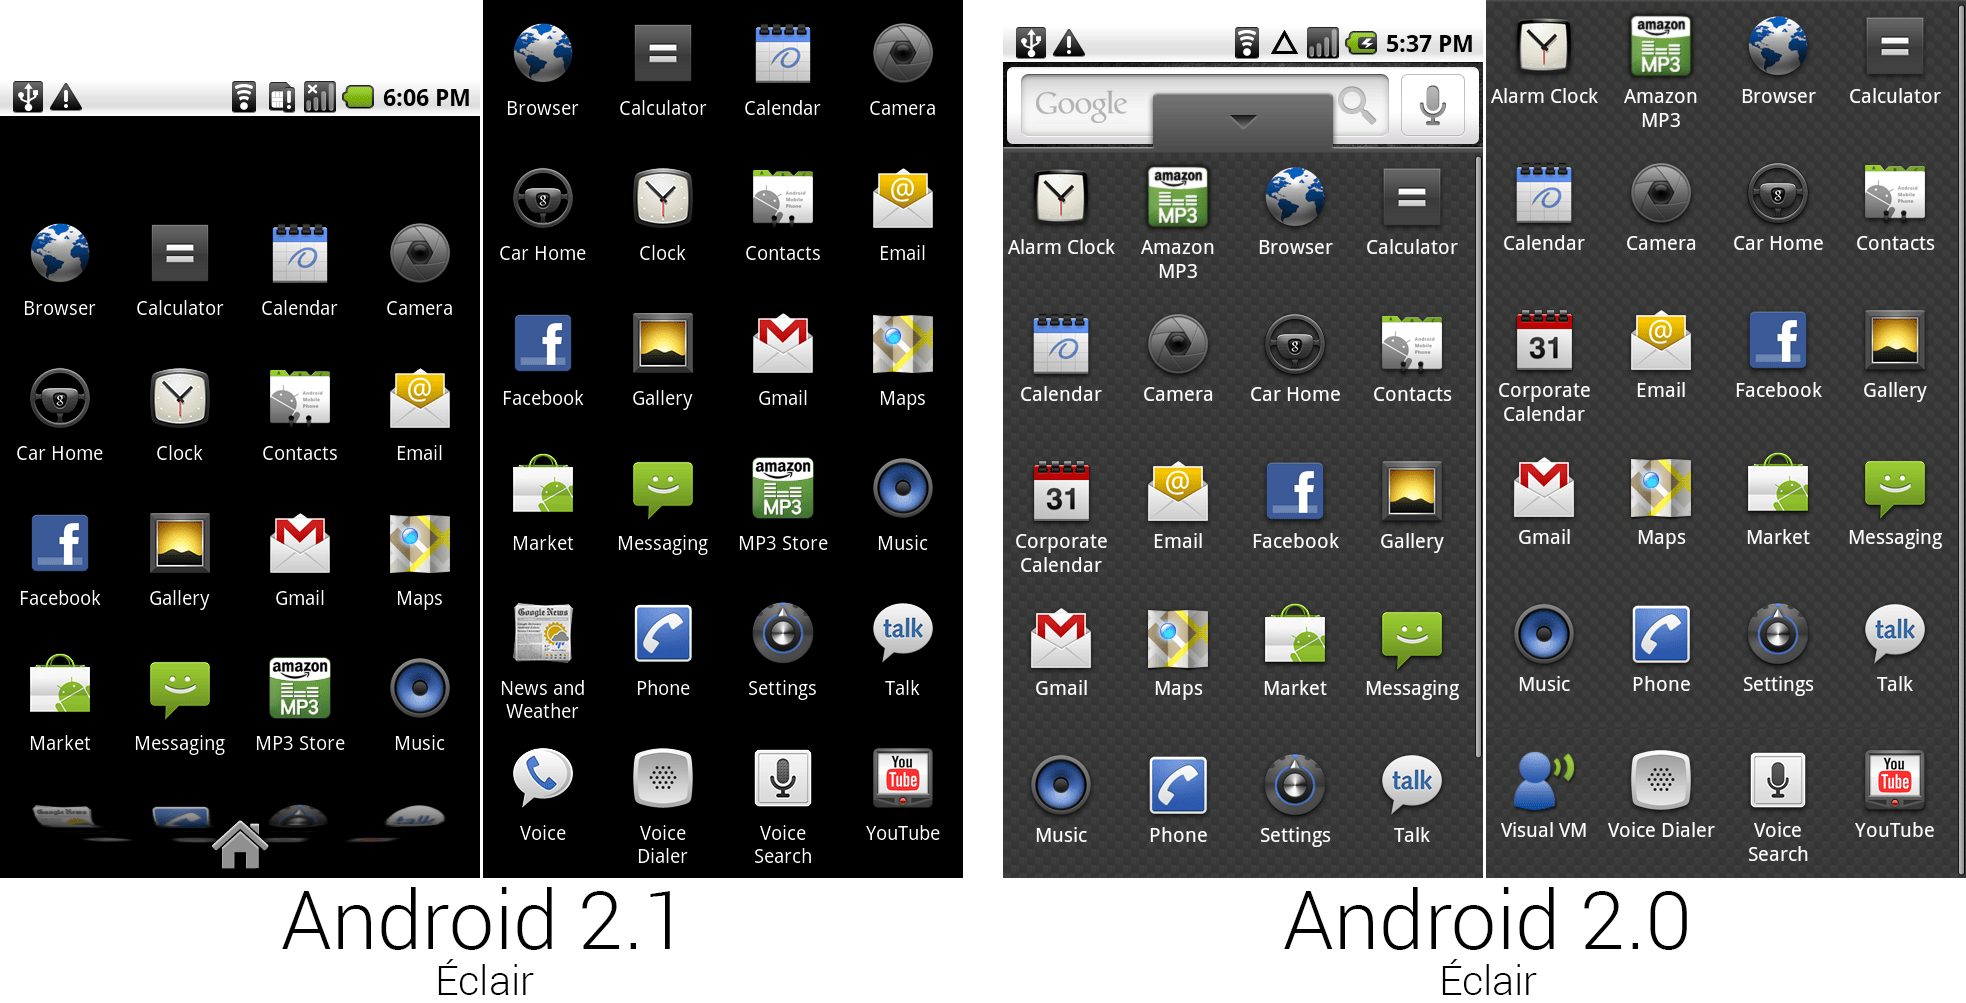 图片展示了安卓2.1和2.0中的应用抽屉设计以及应用的选择。